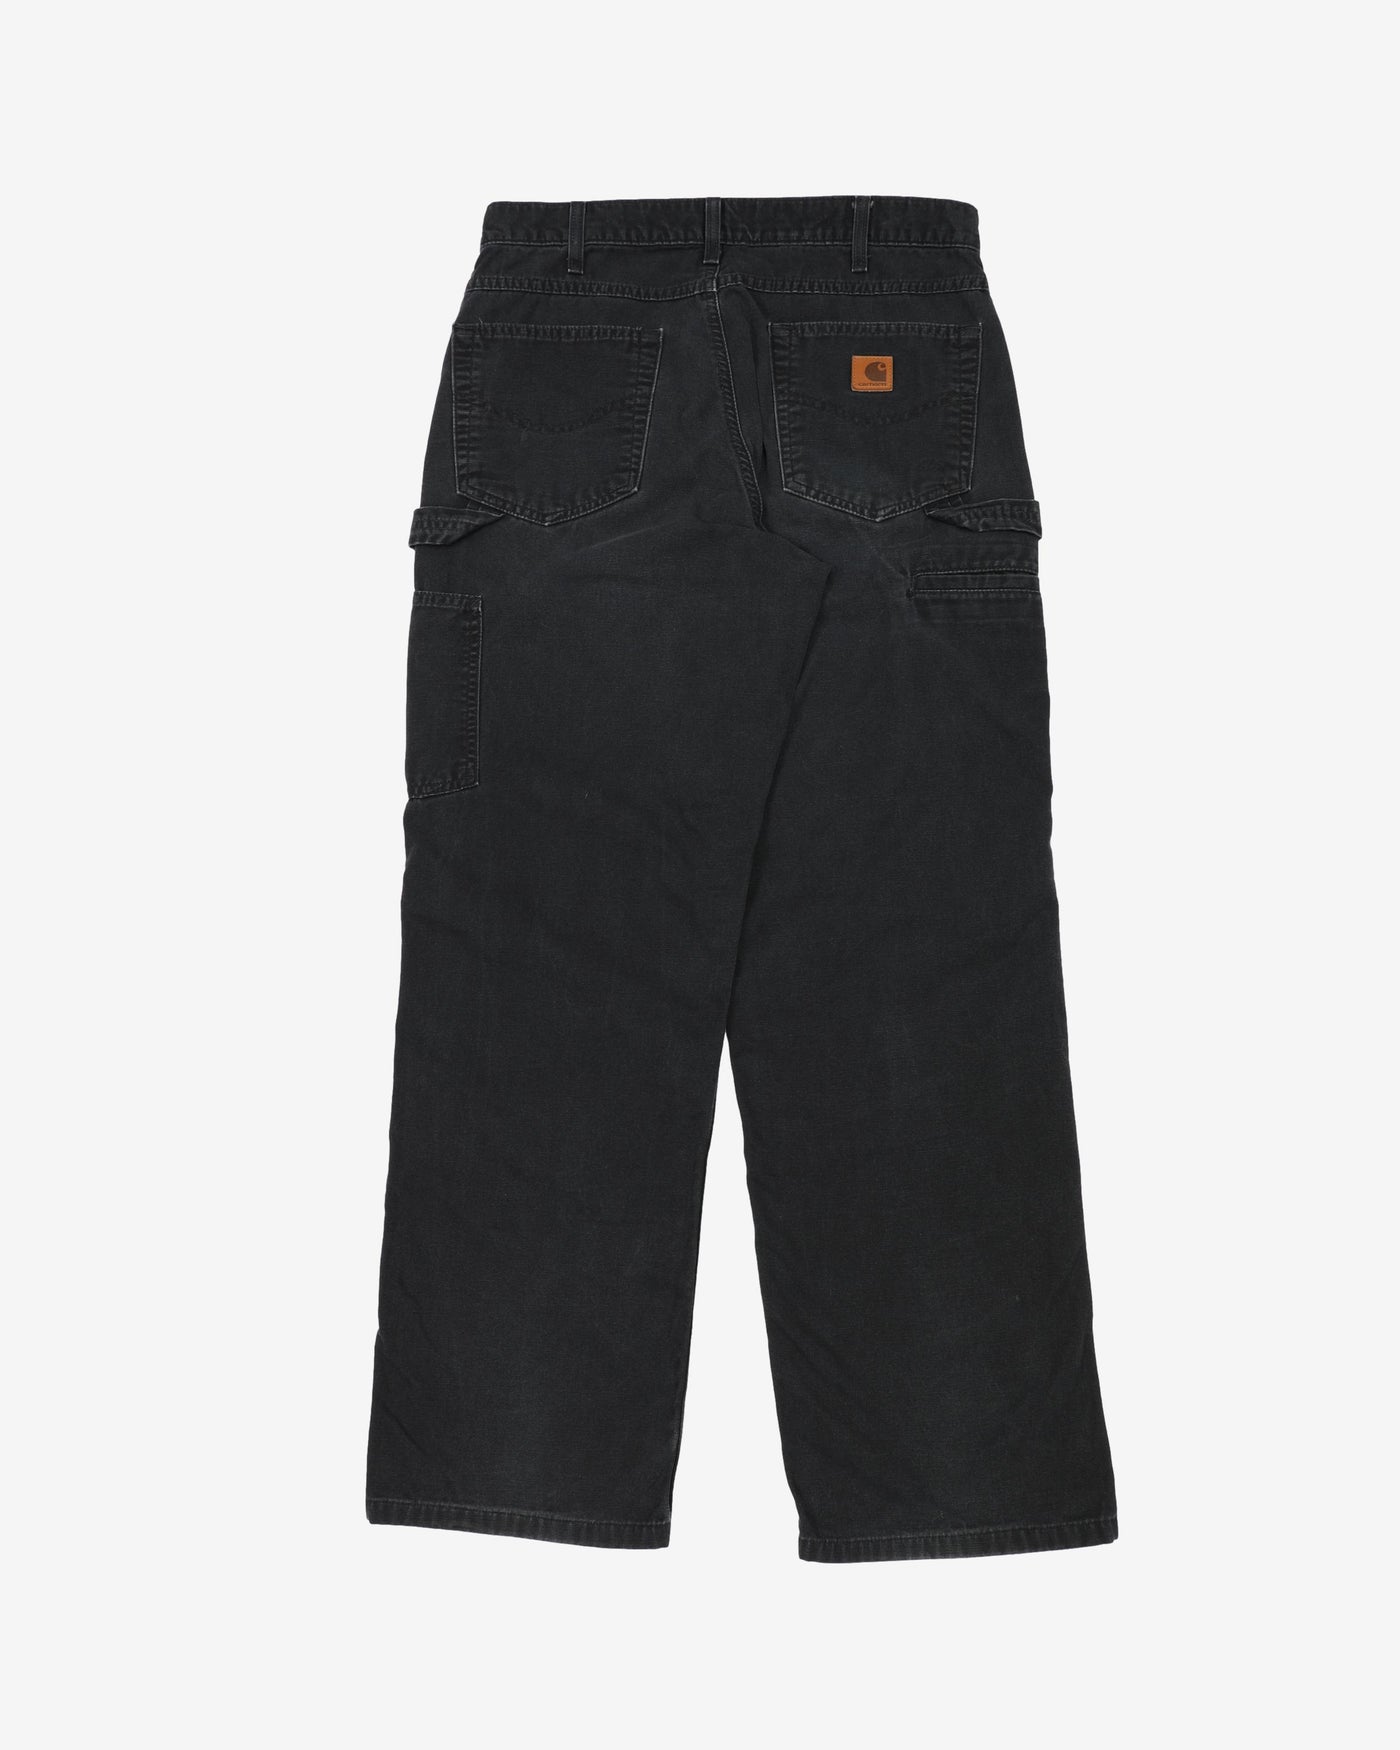 Carhartt Black Faded Workwear Jeans - W33 L30